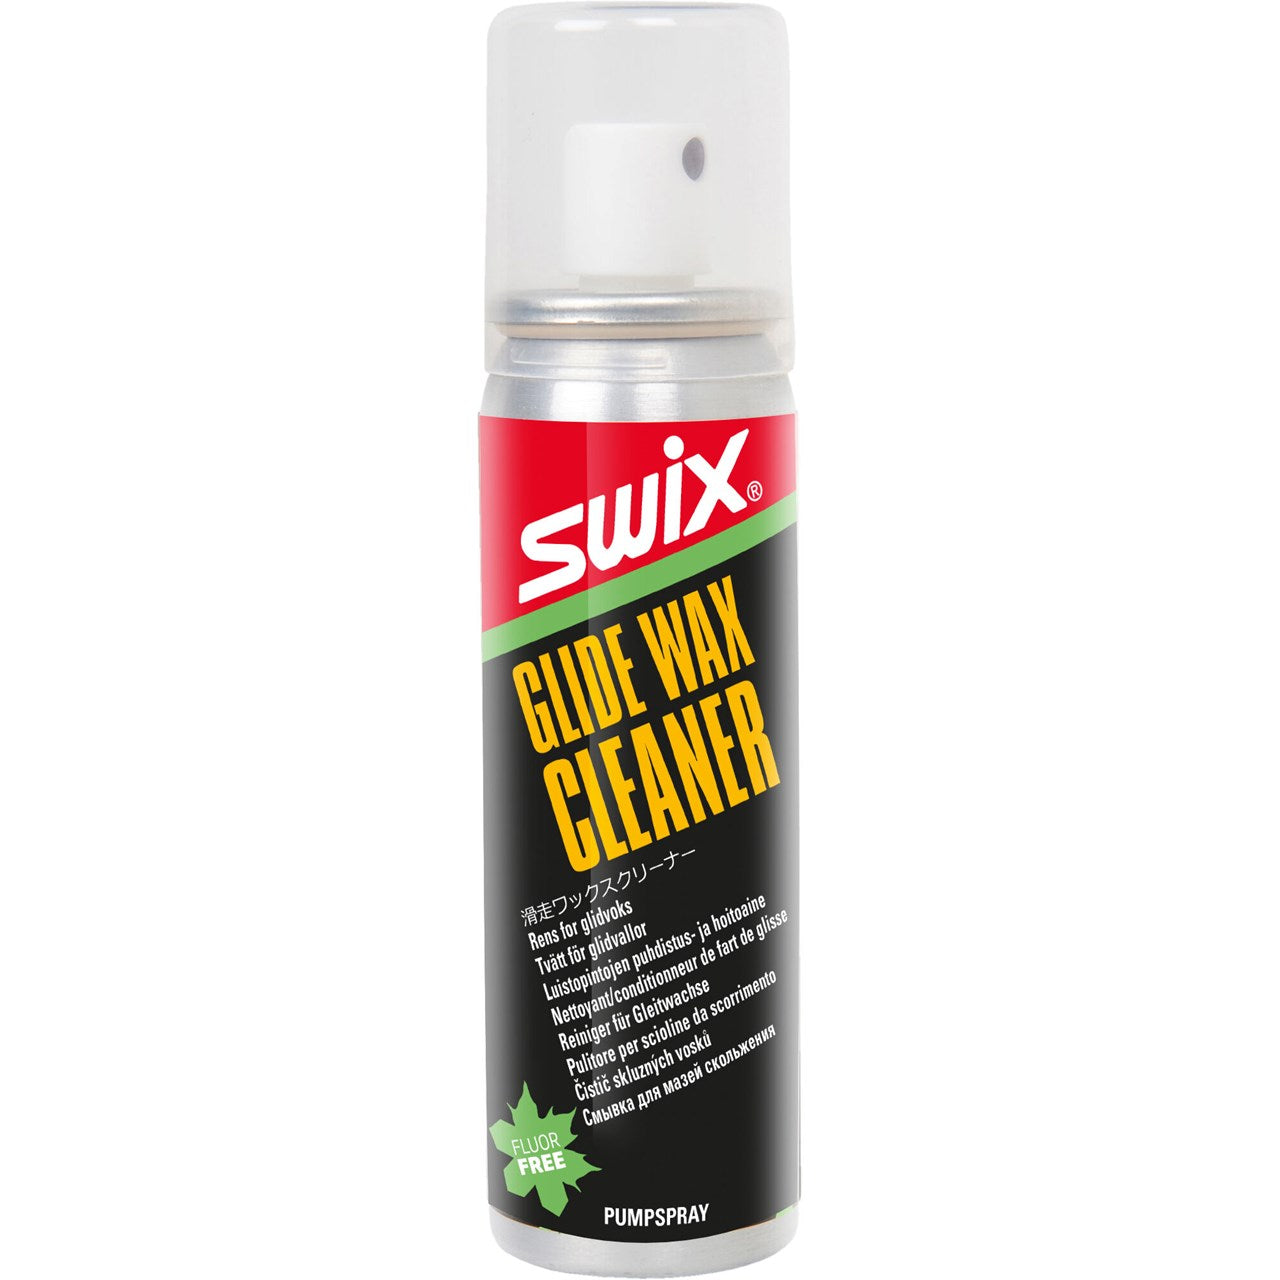 SWIX Glide Wax Cleaner 70ml